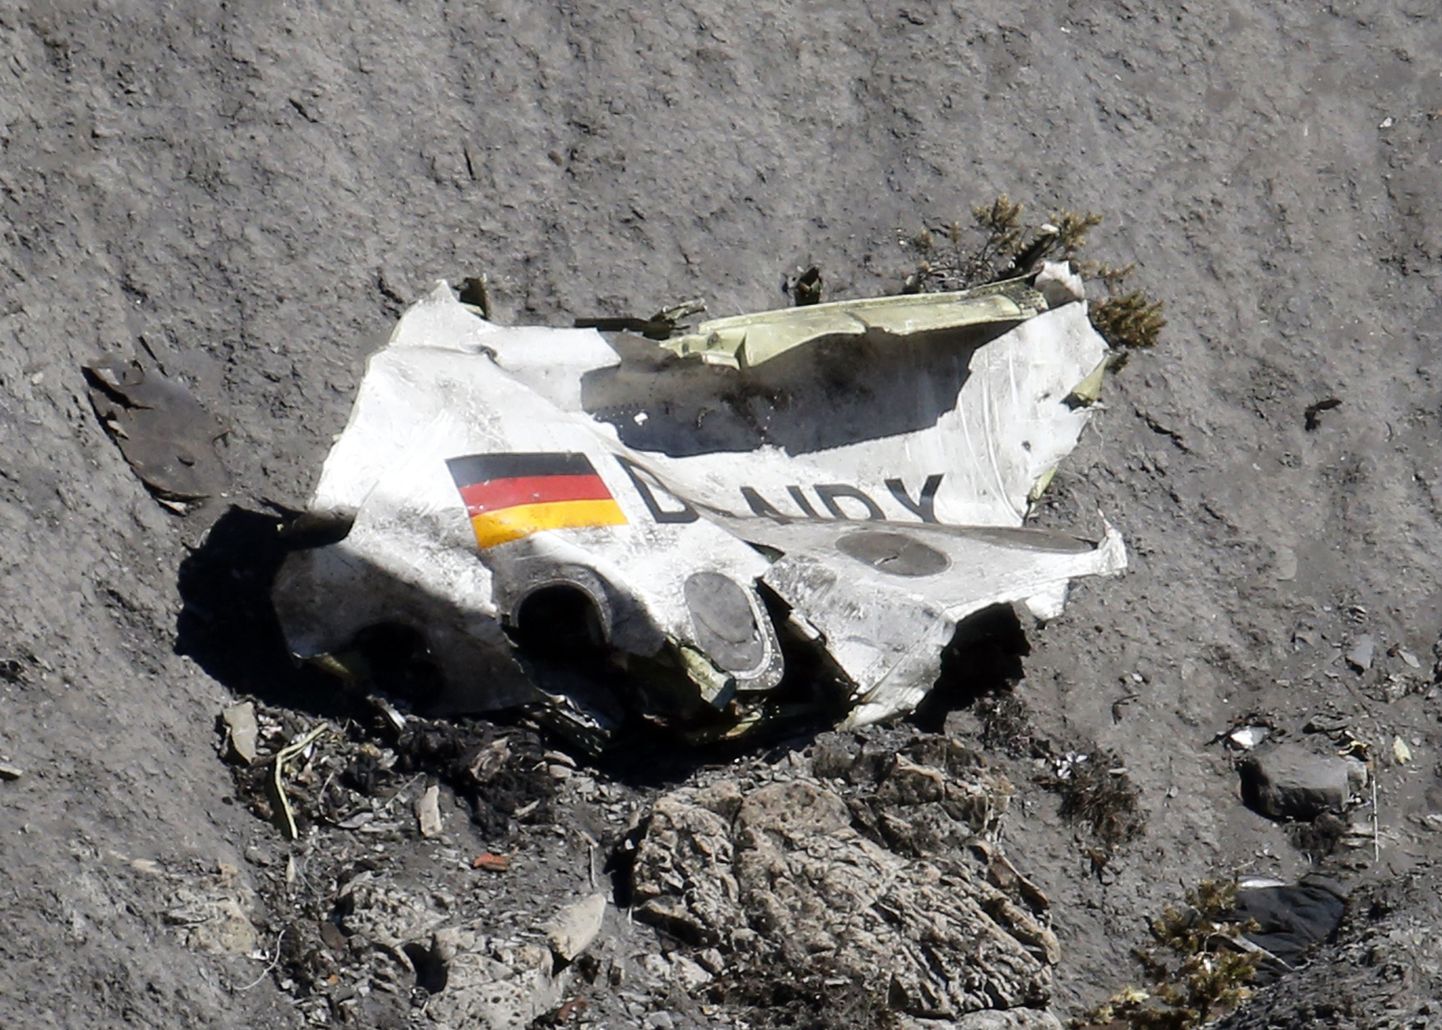 Родственники нескольких погибших в авиакатастрофе Germanwings над Альпами потребовали миллионных компенсаций морального ущерба.